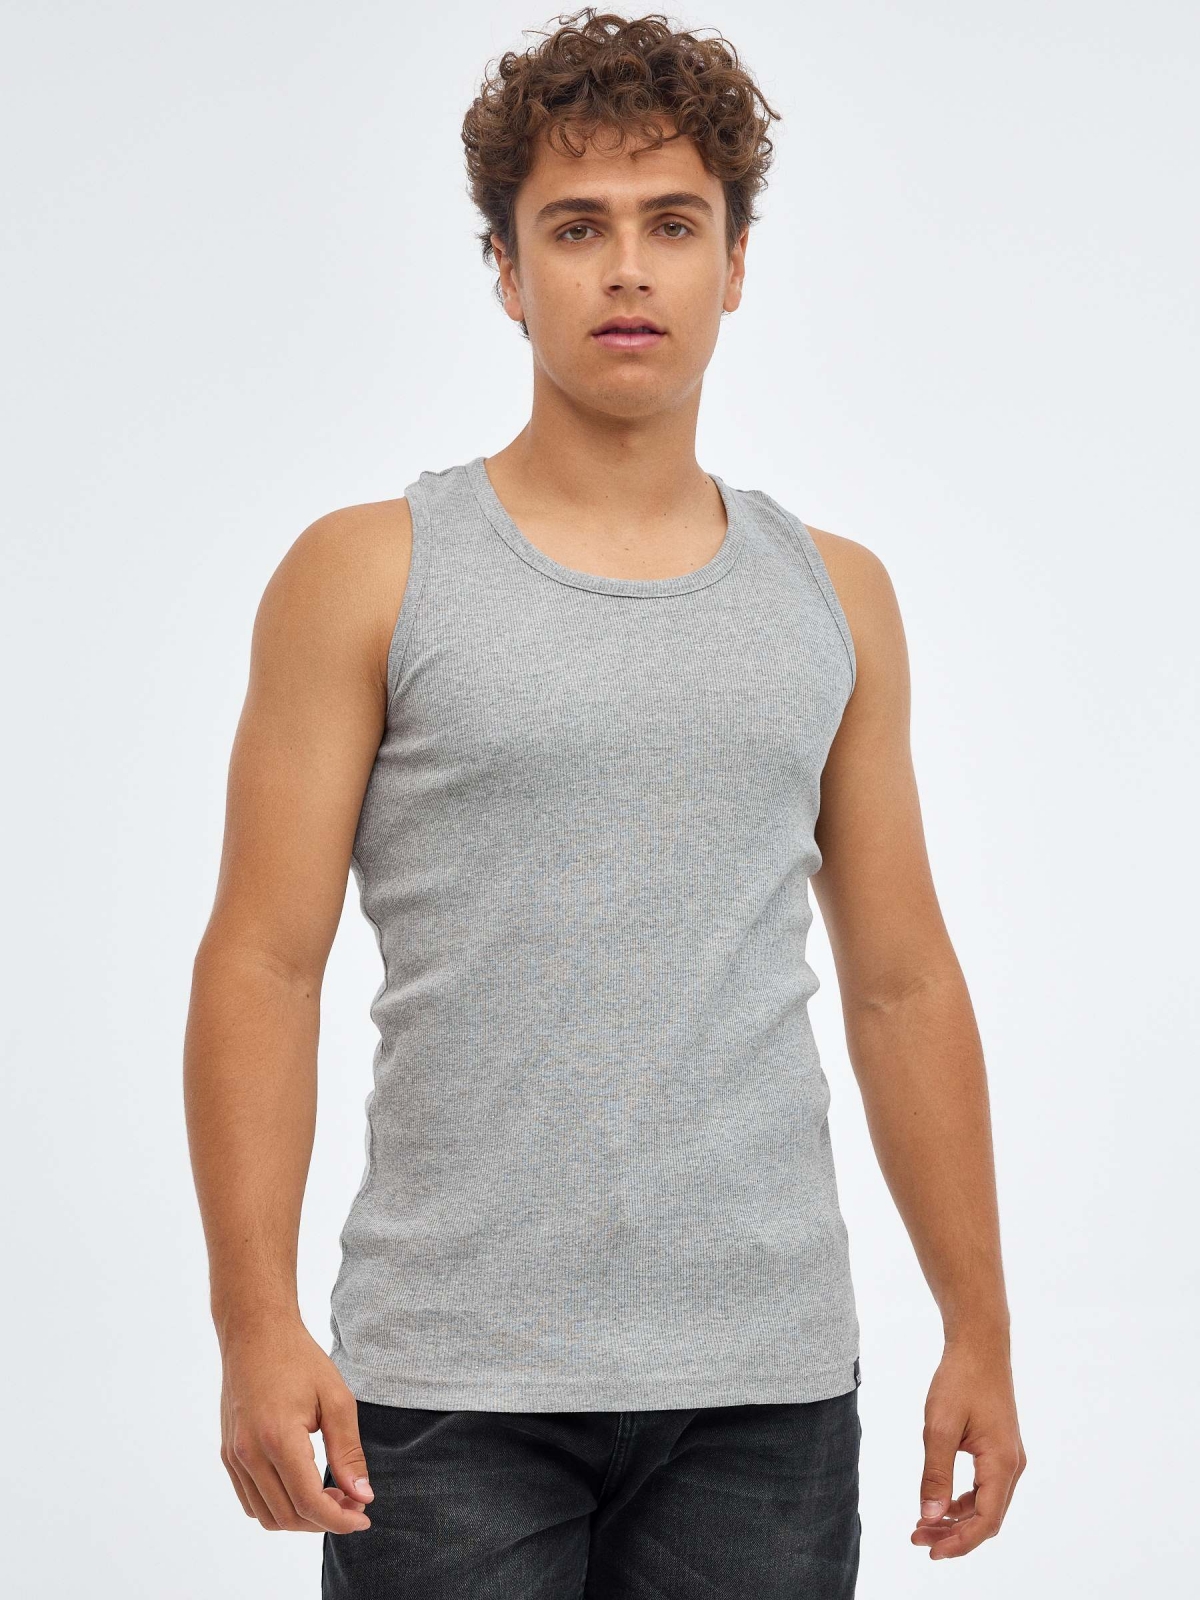 Camiseta básica espalda nadadora gris vista media frontal